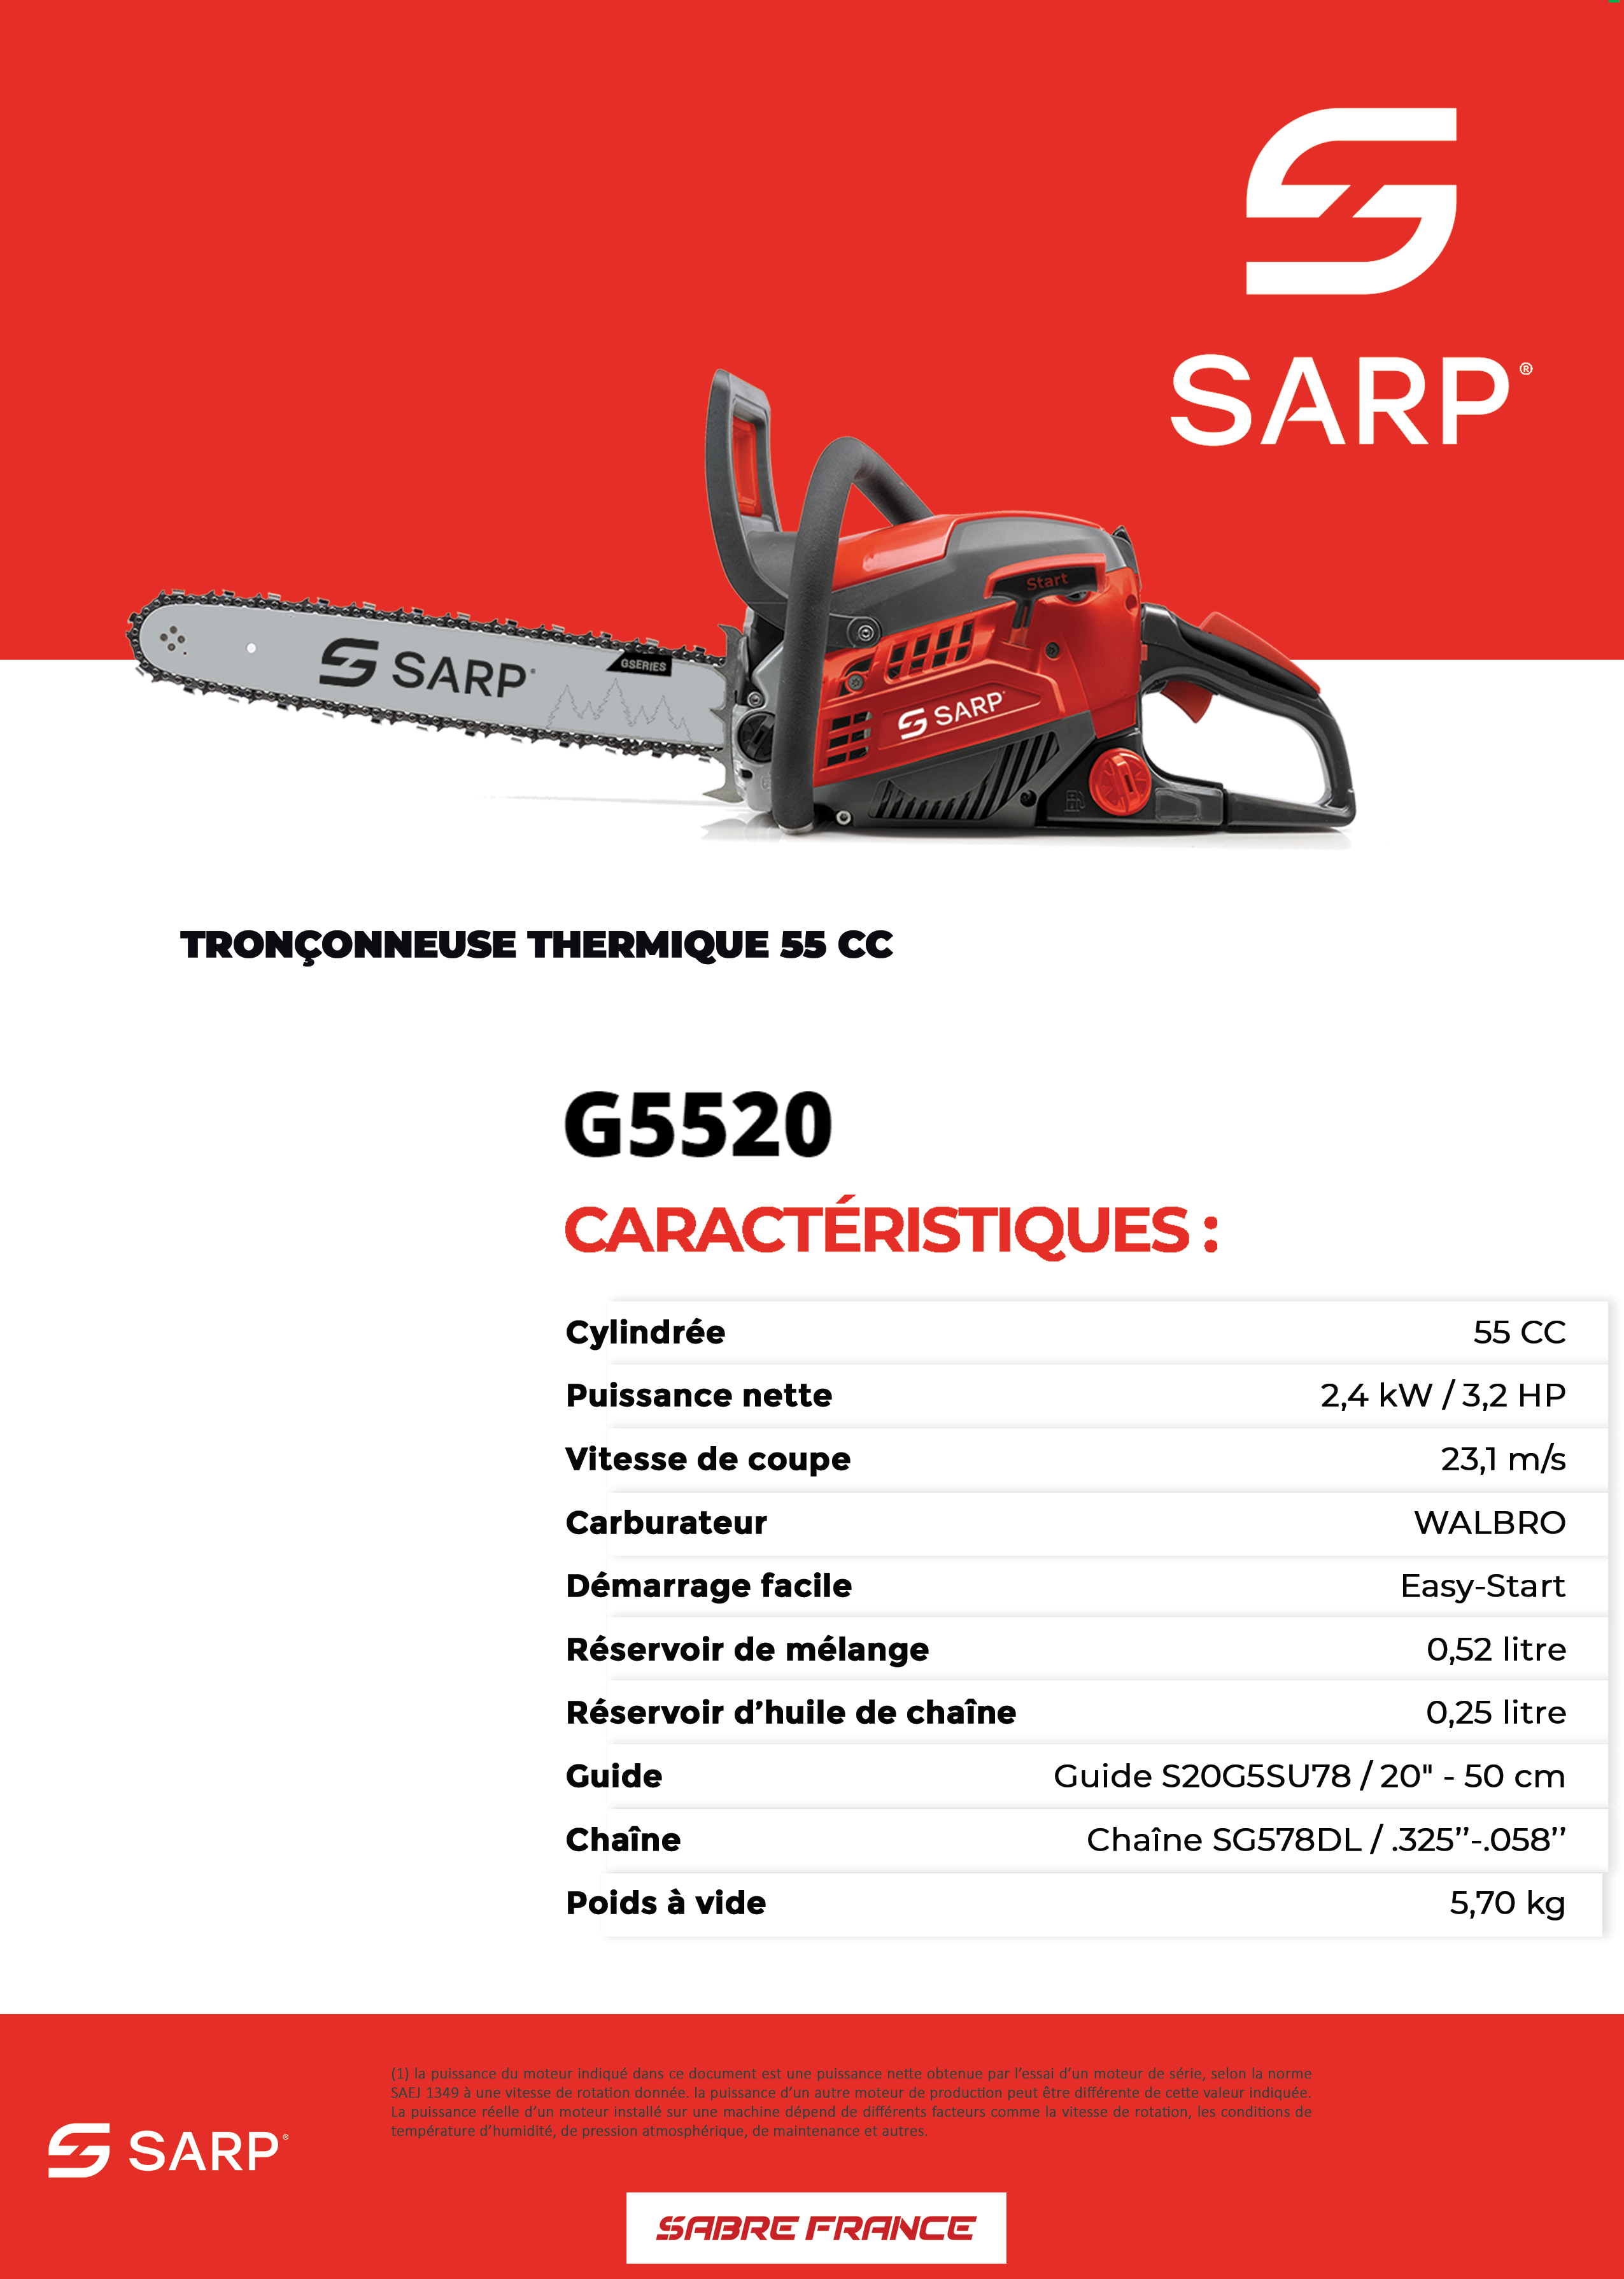 Tronçonneuse thermique G5520 - Sarp